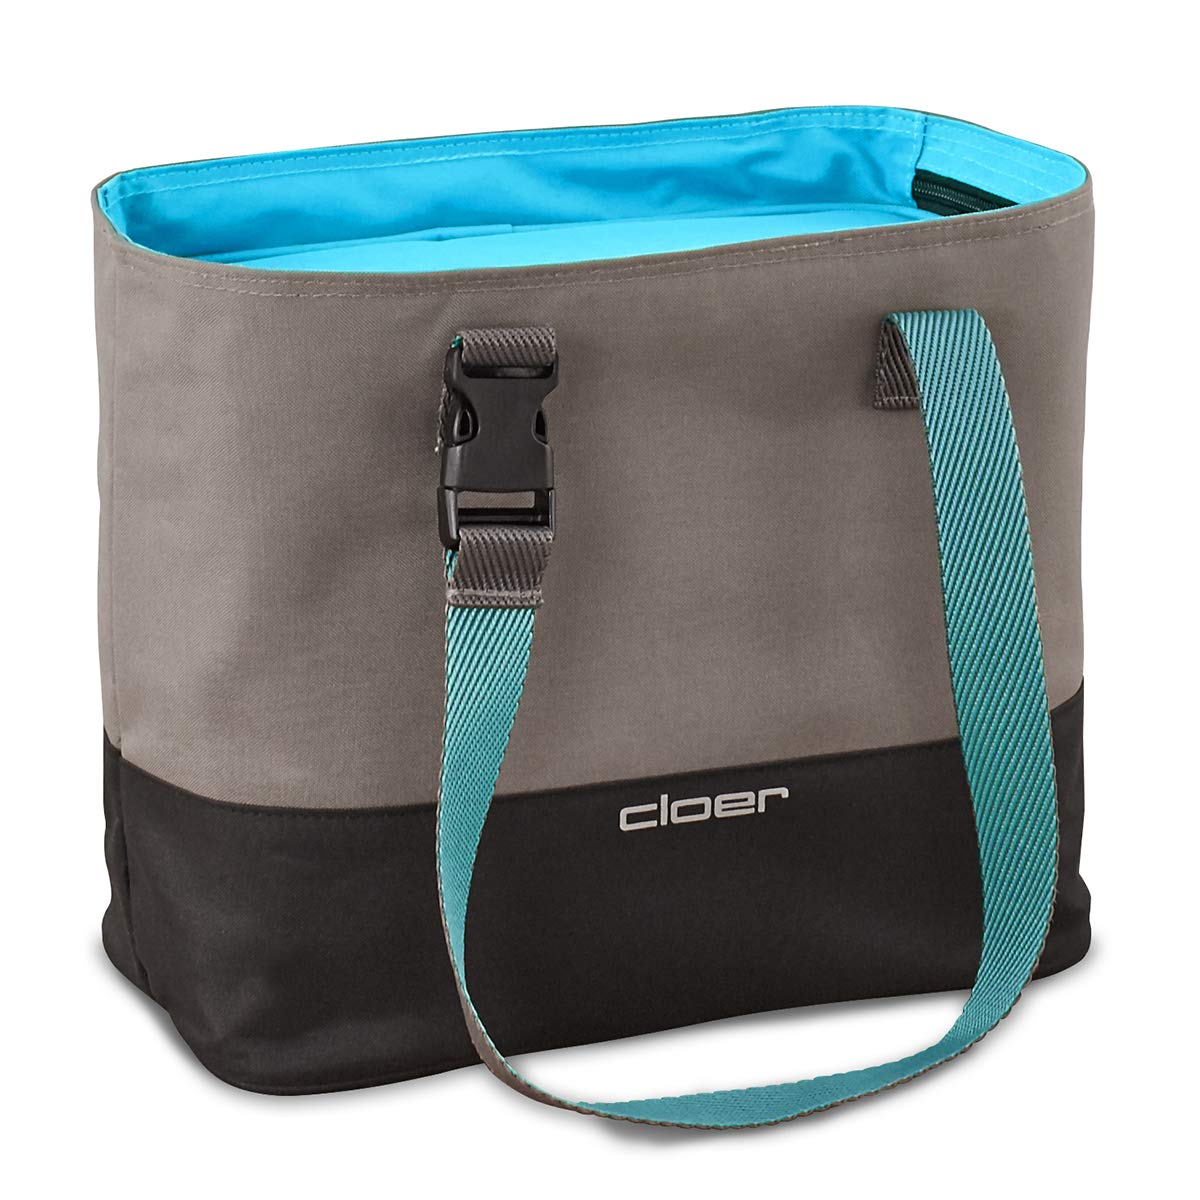 Cloer 810-13 Isoliertasche, Lunch Care System, Lunchbag für bis zu 3 Lunchboxen, Isolierfunktion, Reflektierendes Logo, Polyester, Blau, 9 Liter